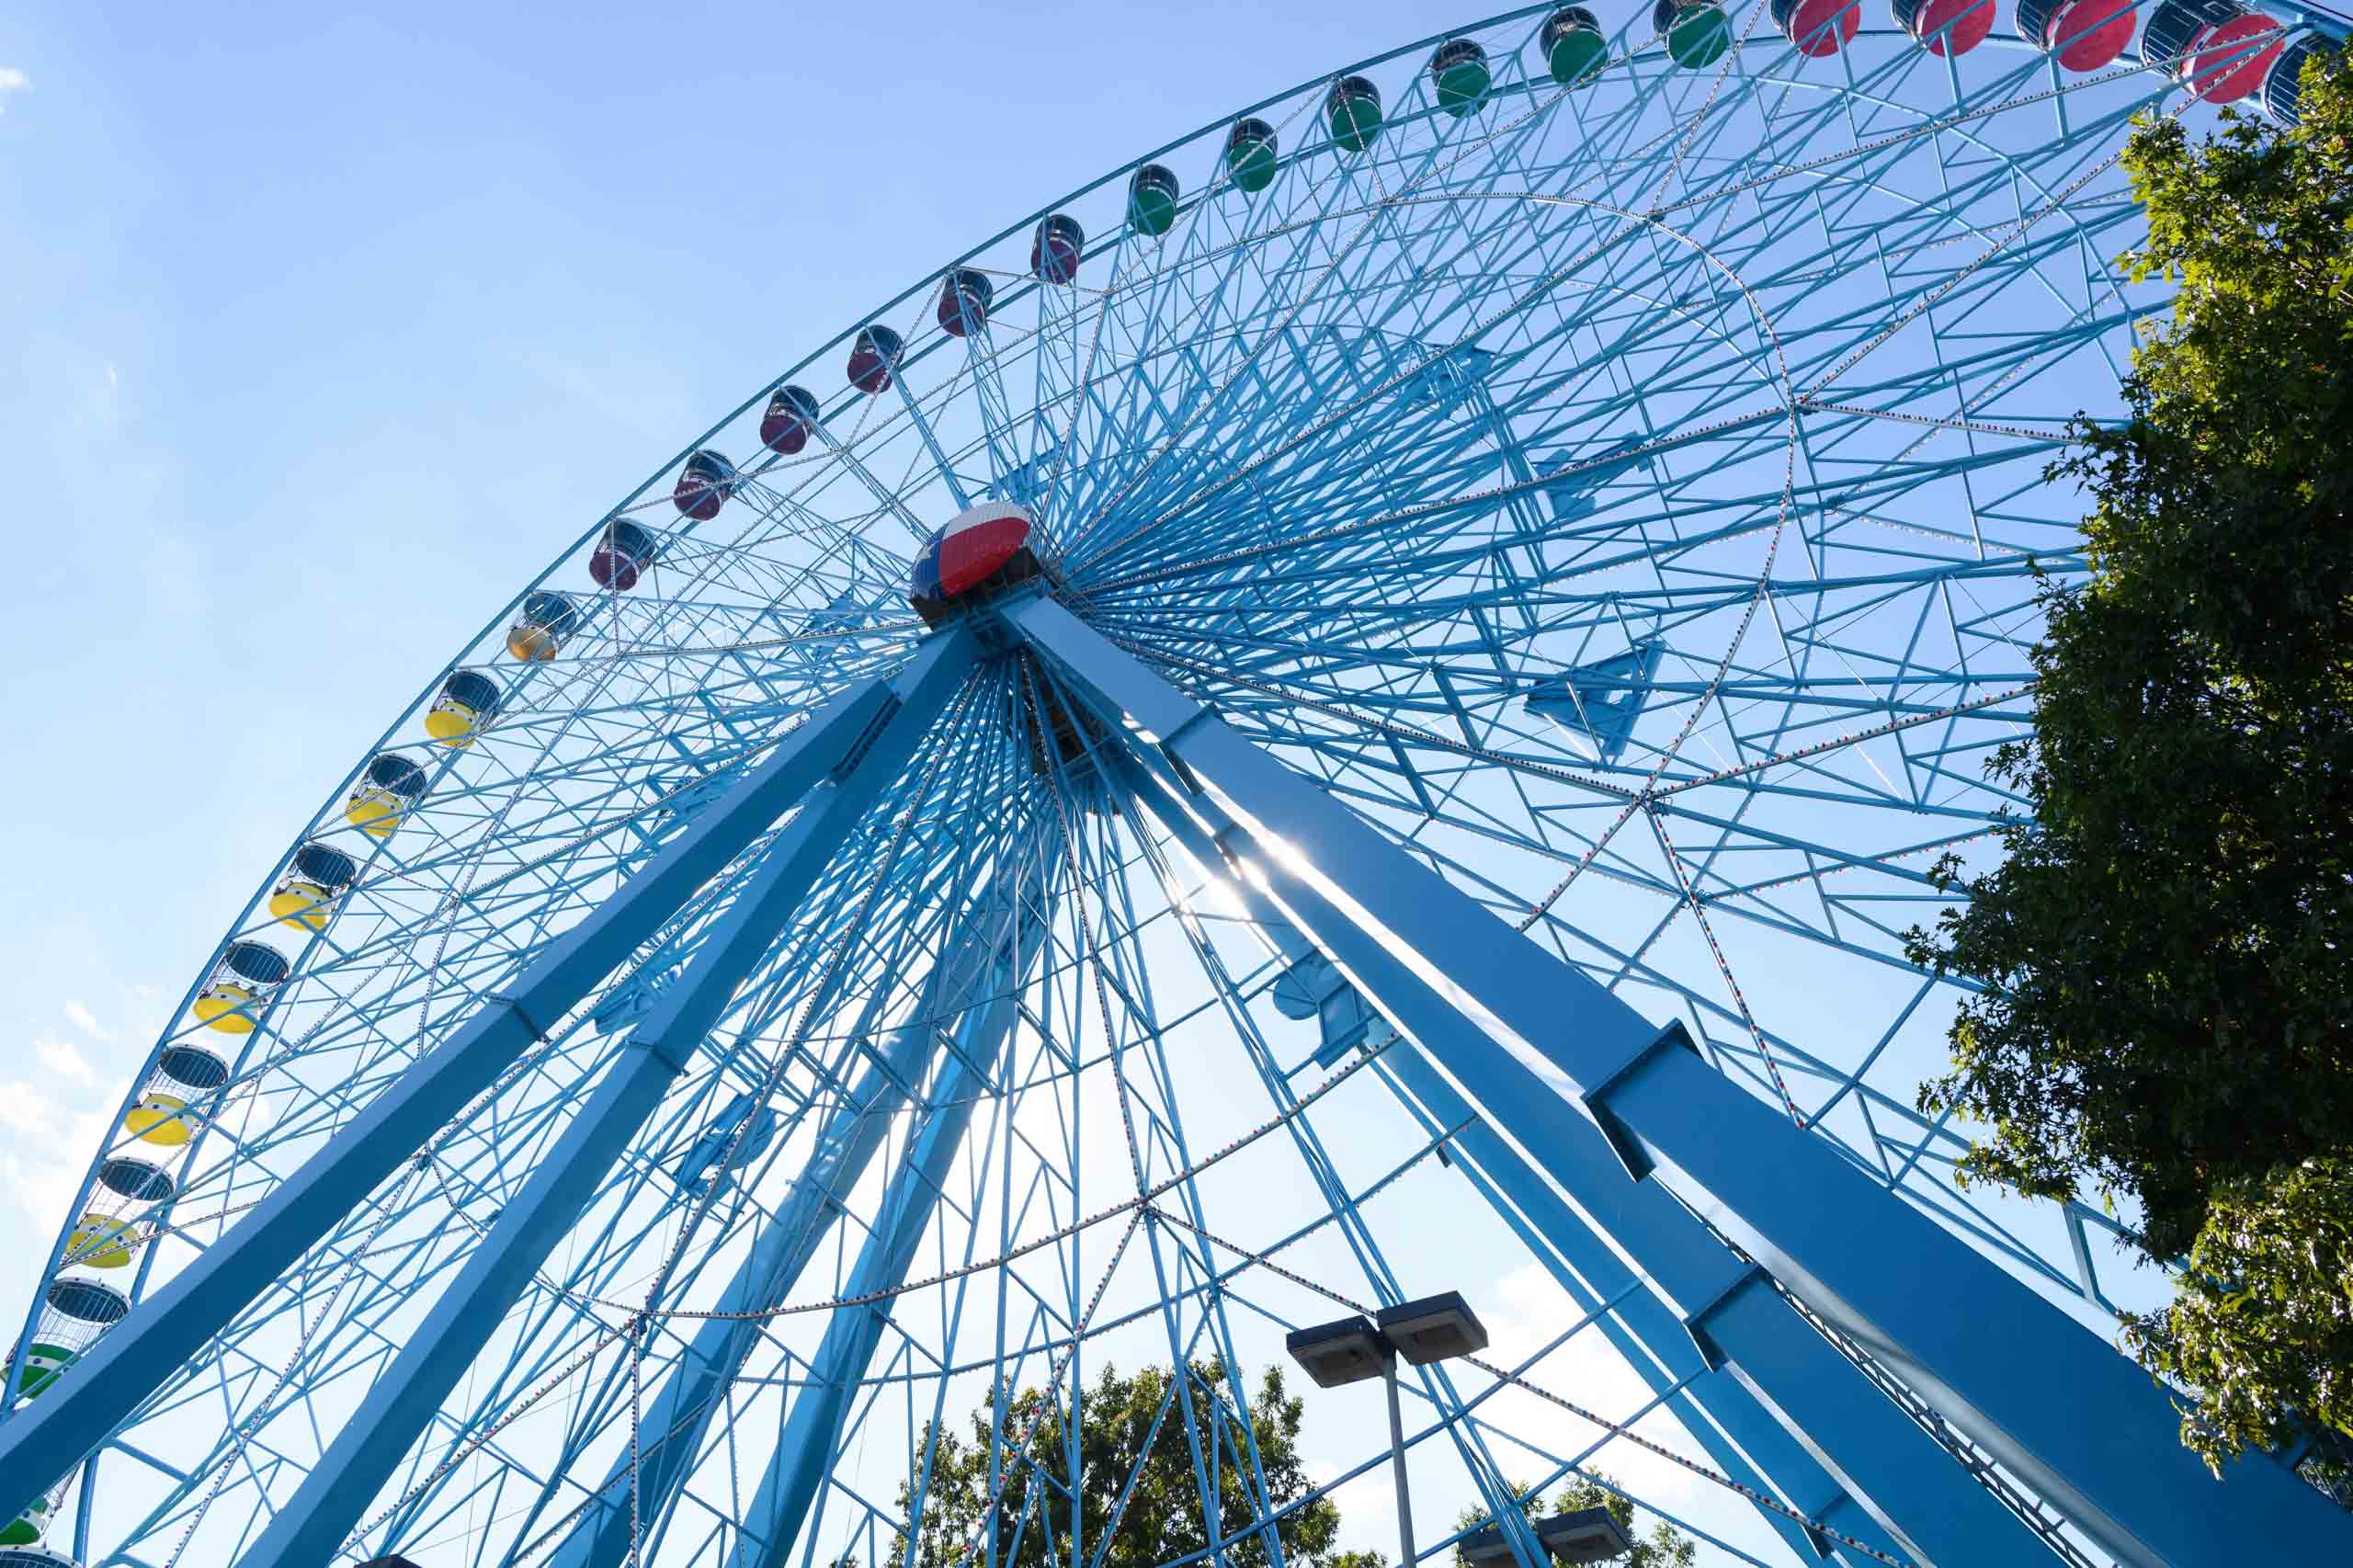 A blue ferris wheel in front of a blue sky.